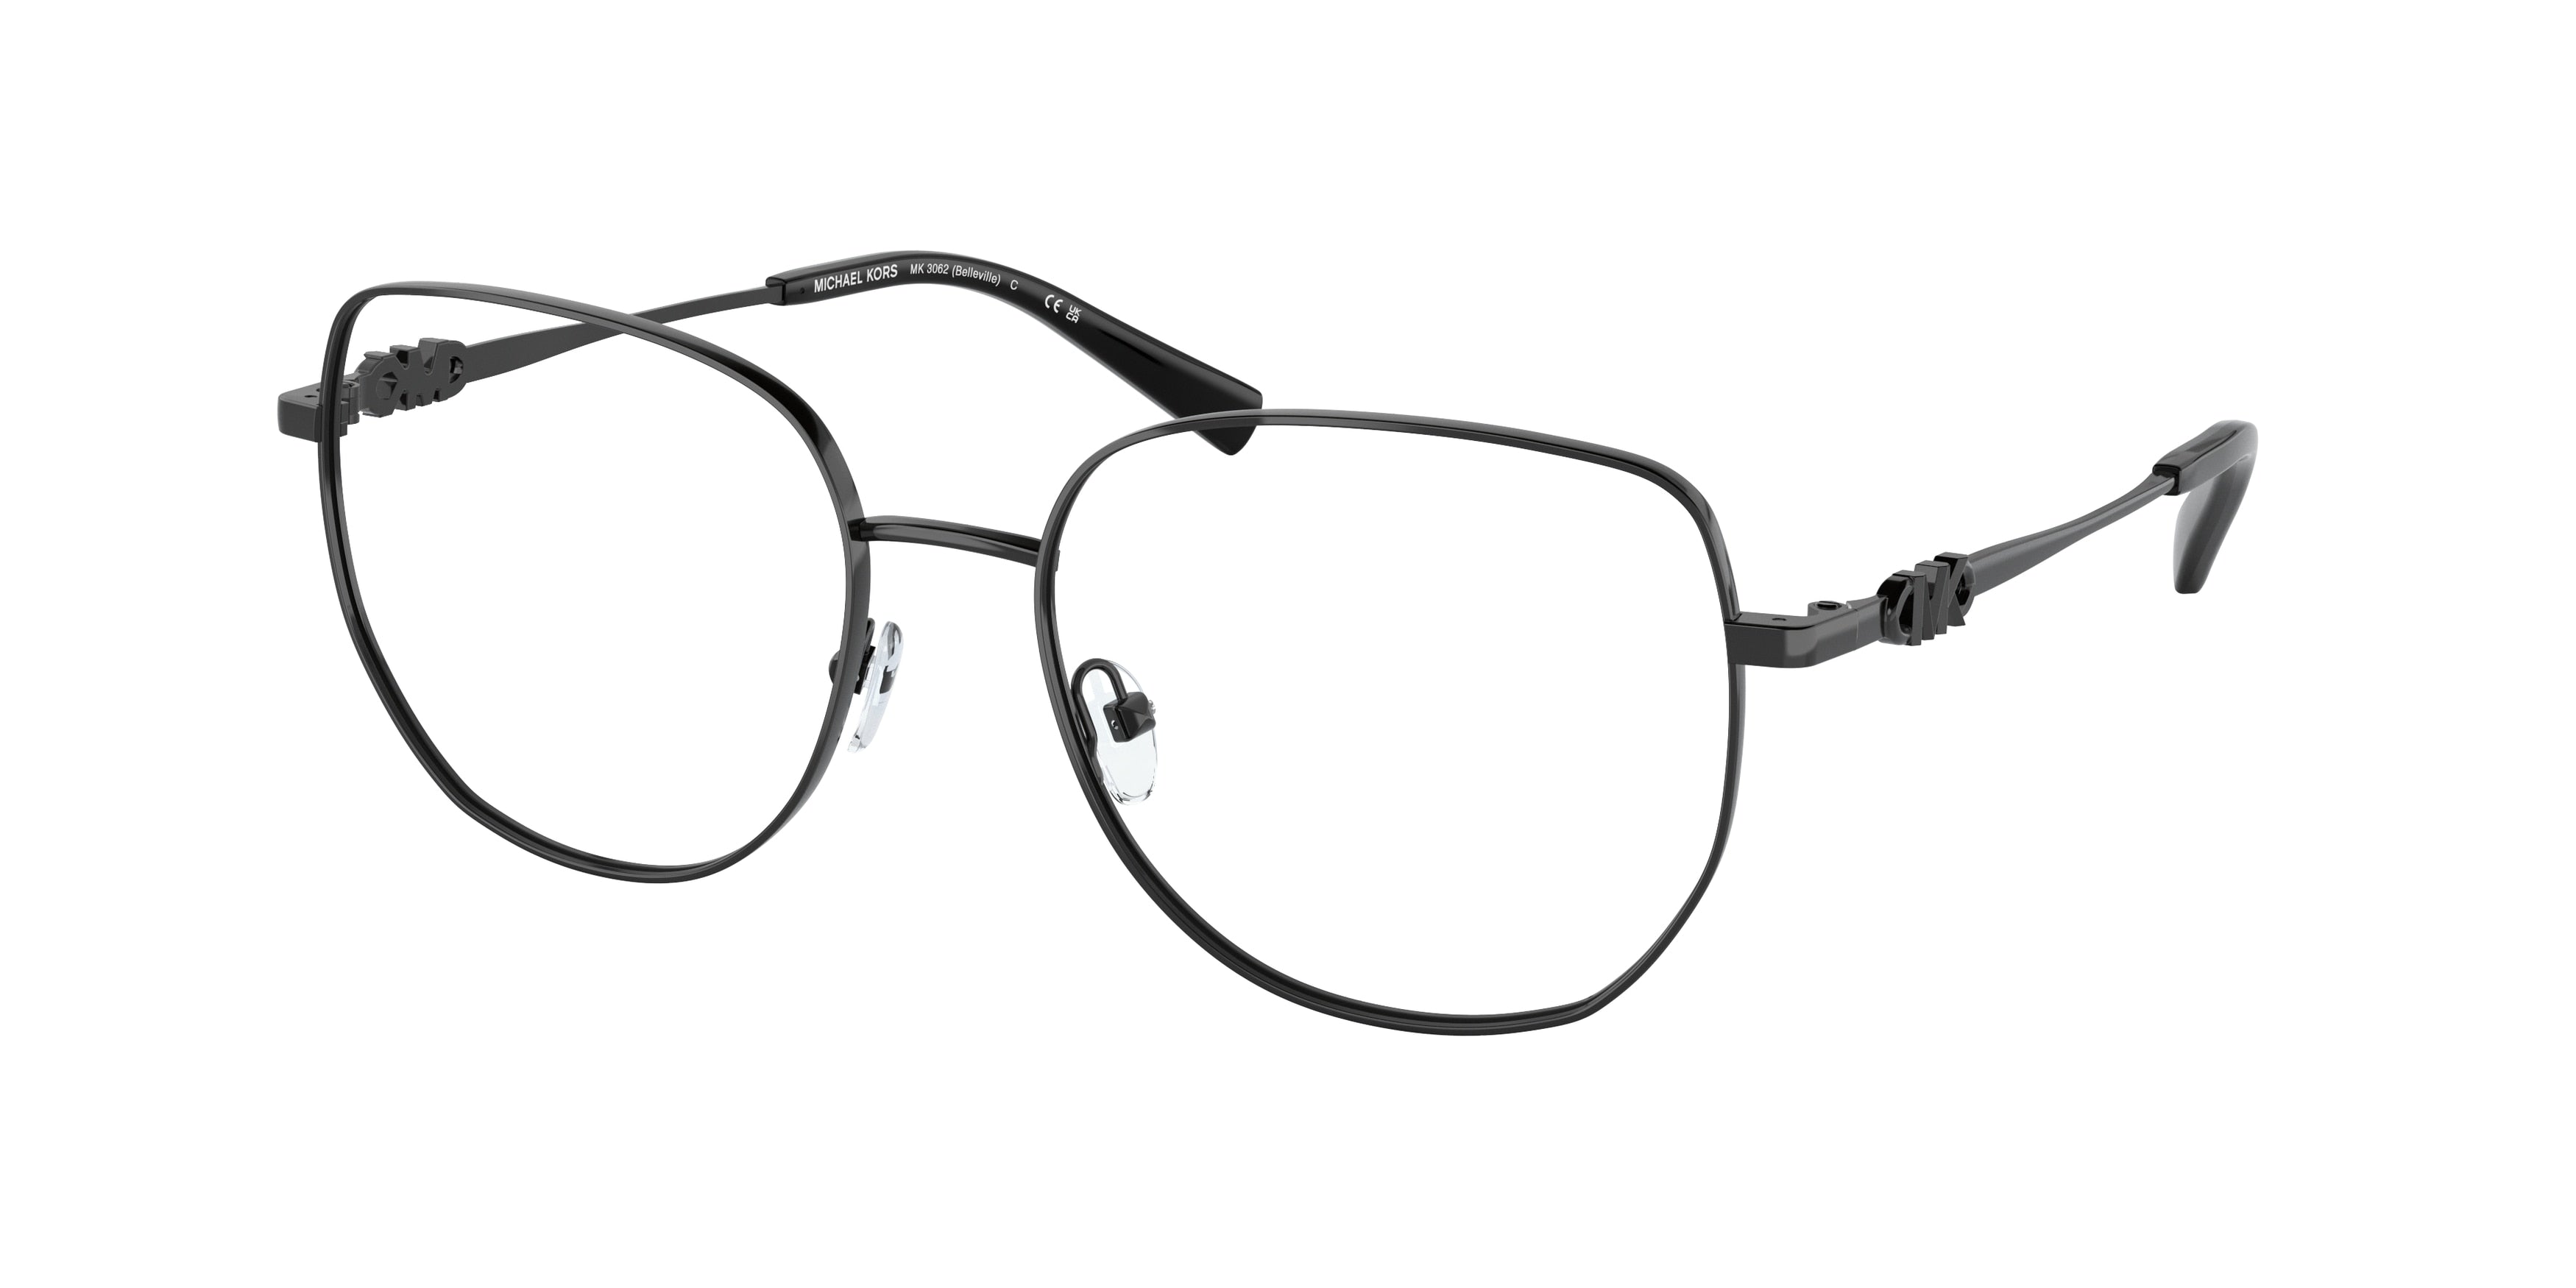 Michael Kors BELLEVILLE MK3062 Square Eyeglasses  1005-Shiny Black 54-140-17 - Color Map Black